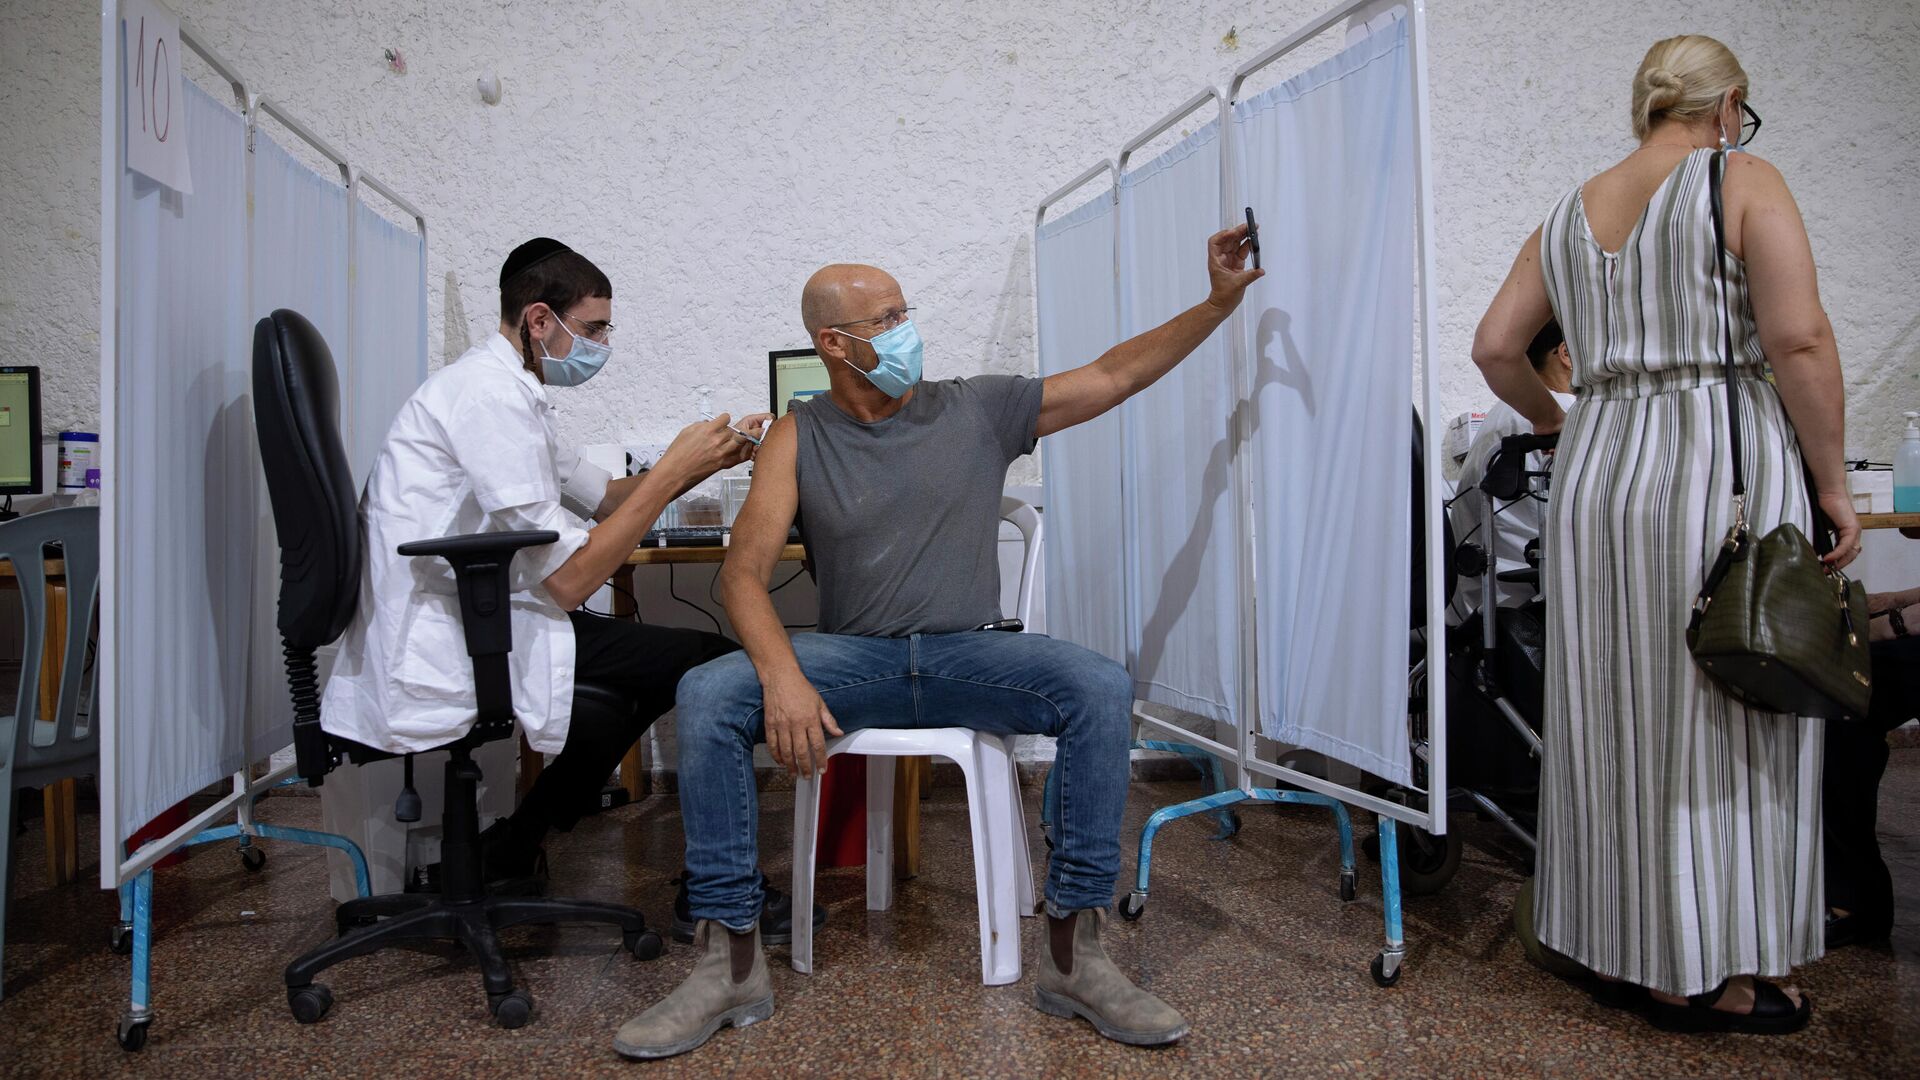 Израильтянин делает селфи во время вакцинации препаратом Pfizer-BioNTech COVID-19 в Рамат-Гане, Израиль - РИА Новости, 1920, 24.12.2021